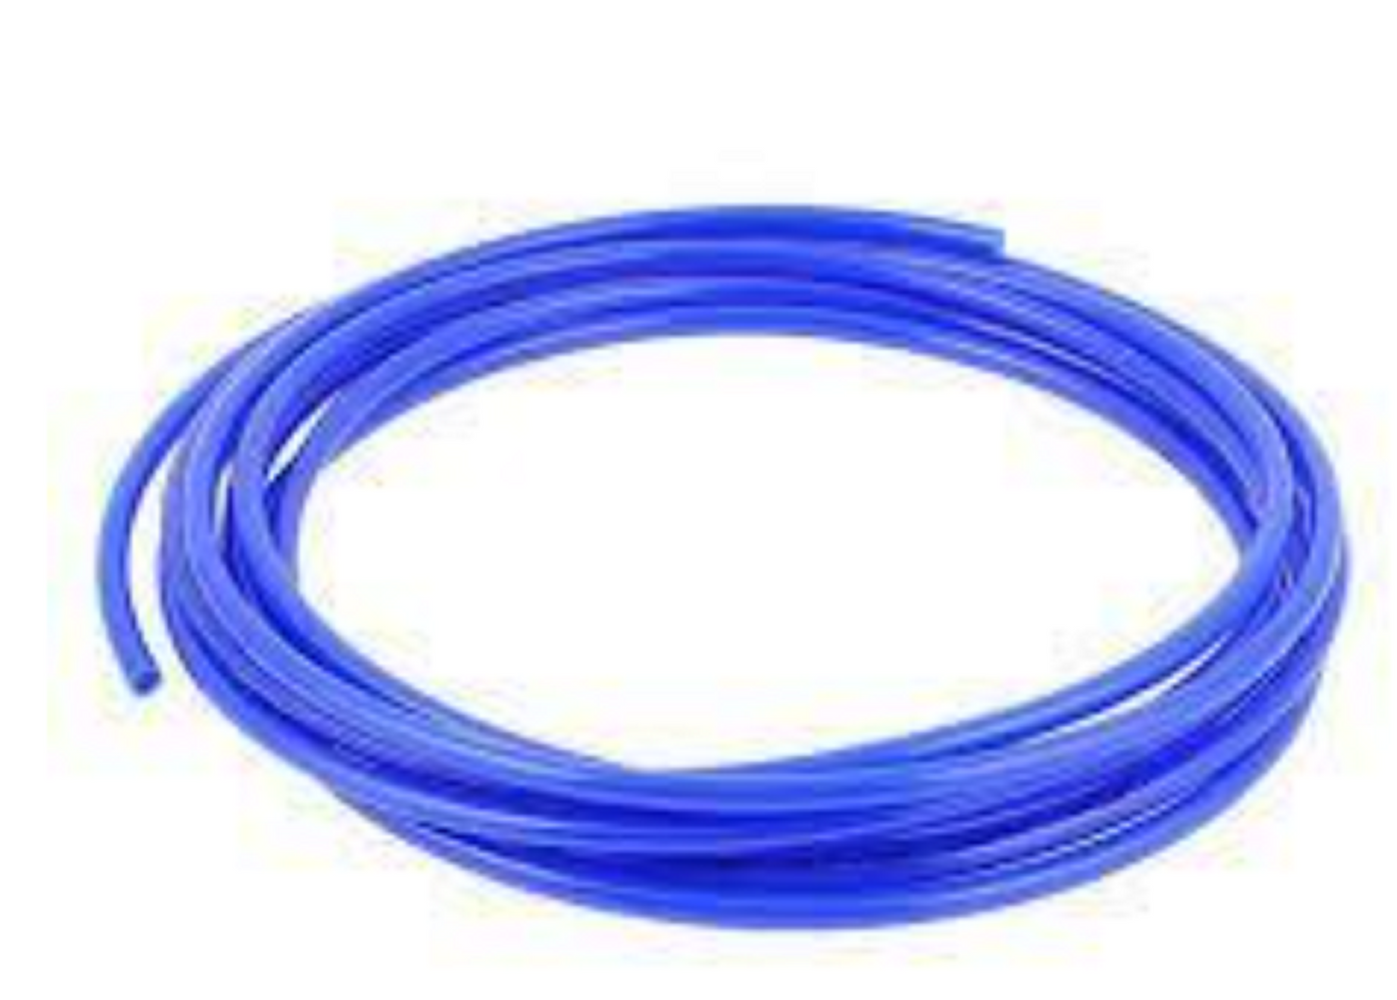 Polyurethane PU Tube - 8mm OD x 5mm ID  Blue - Per 1m Metre Length